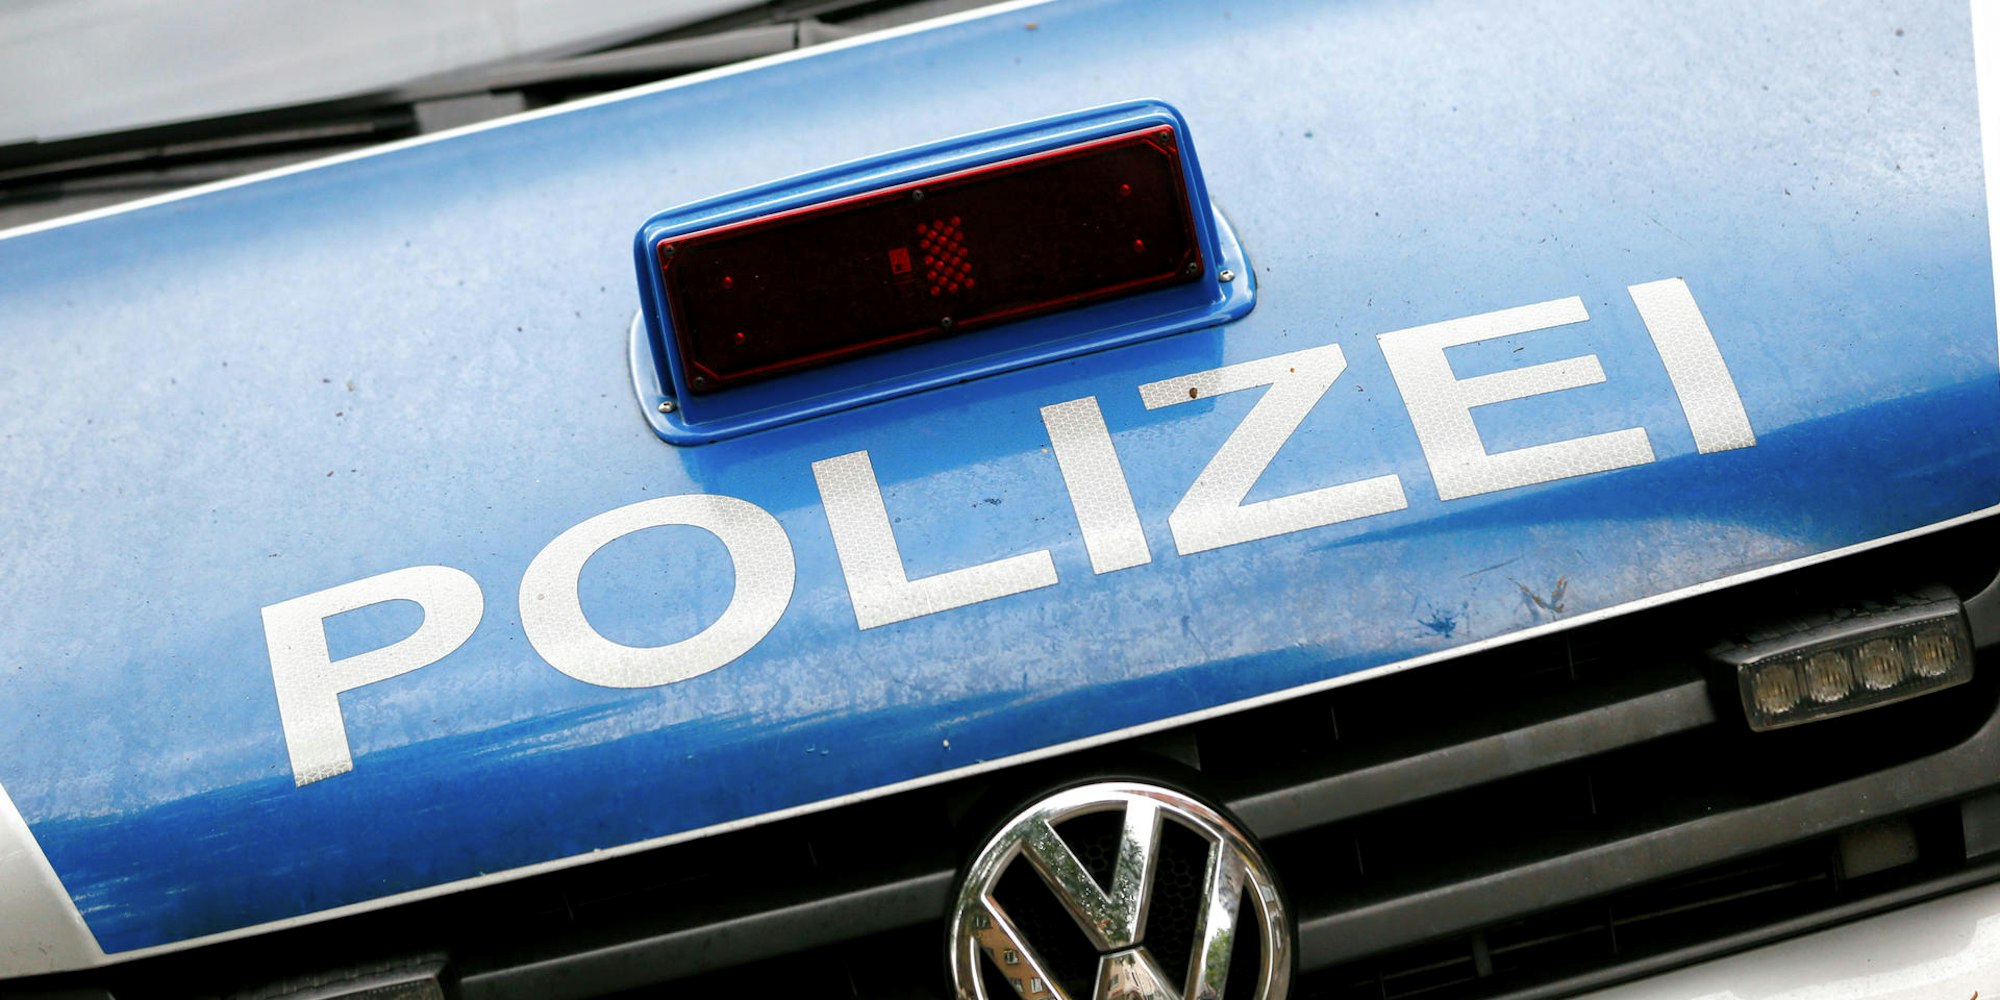 20182506_tb_Polizei_Einsatzwagen_01 (1)